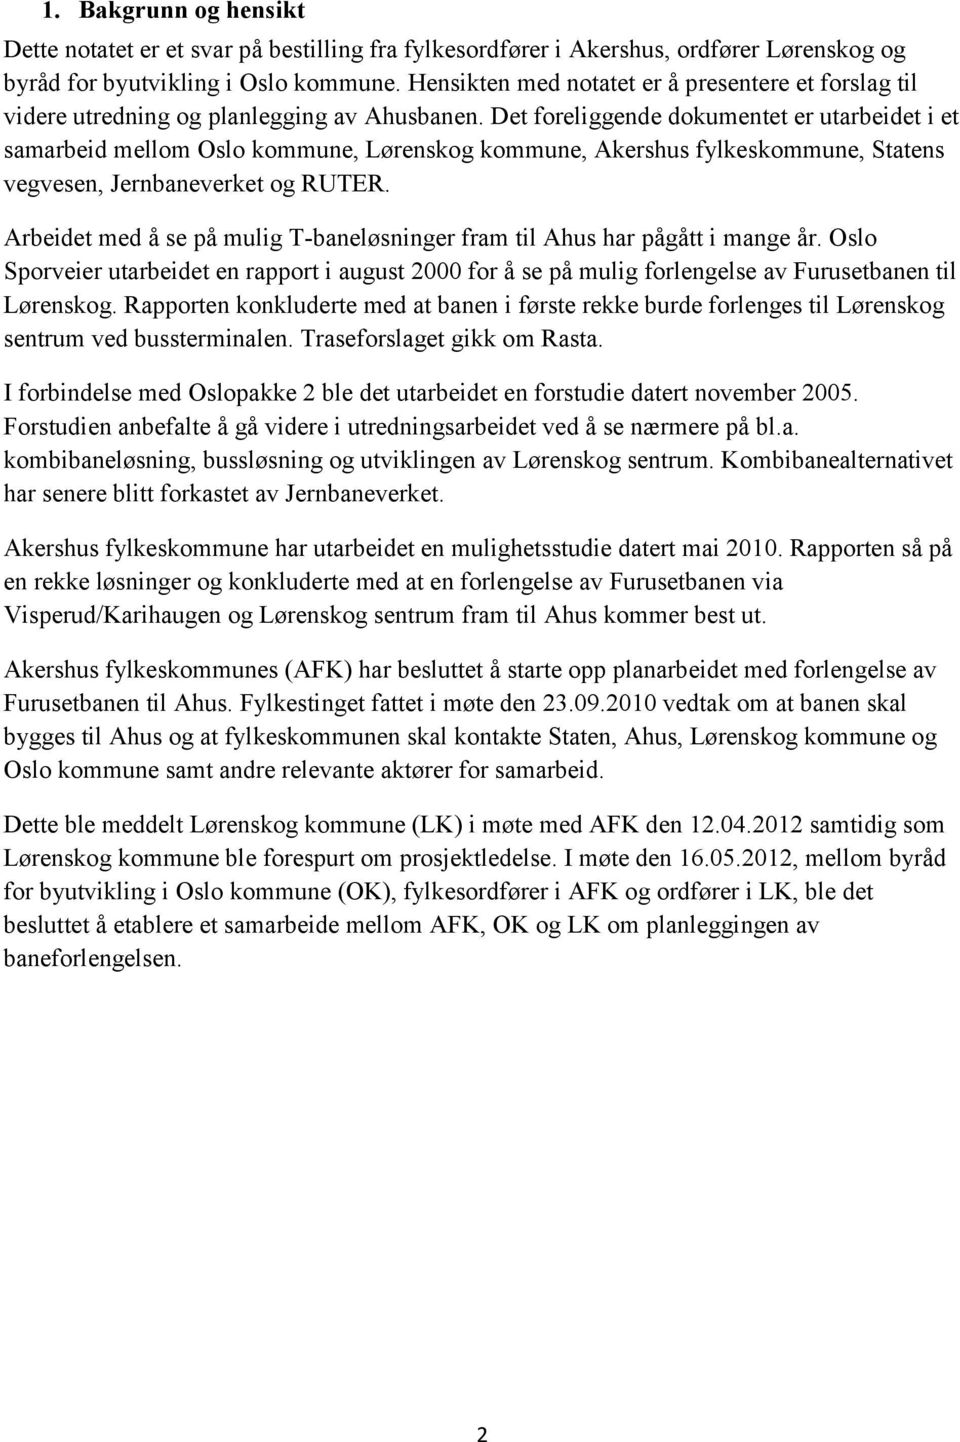 Det foreliggende dokumentet er utarbeidet i et samarbeid mellom Oslo kommune, Lørenskog kommune, Akershus fylkeskommune, Statens vegvesen, Jernbaneverket og RUTER.